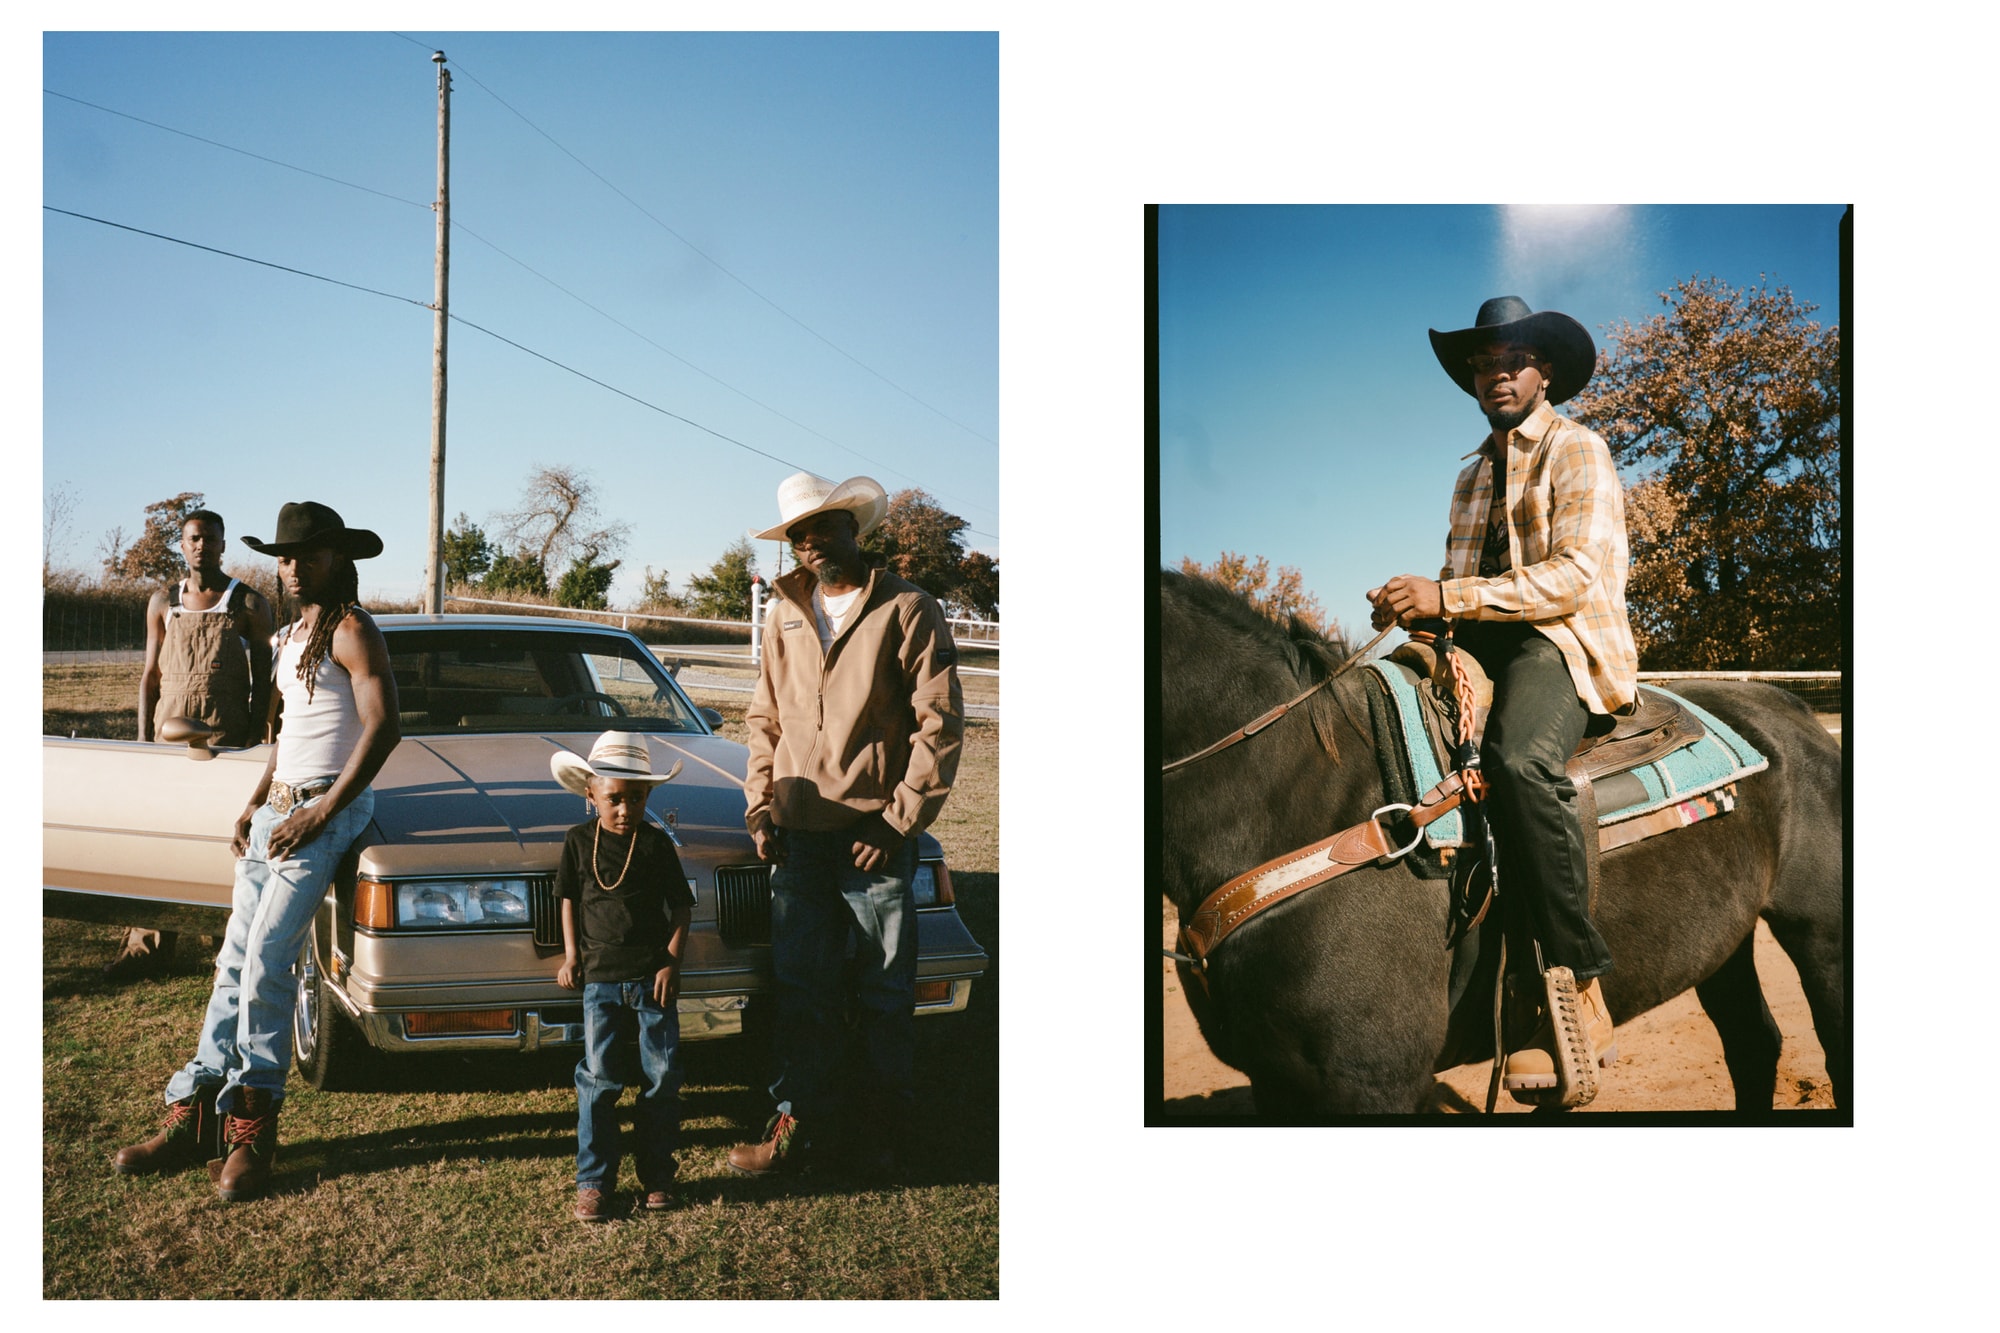 Timberland Black Pioneer Collection with Oklahoma Cowboys / Foto cortesía